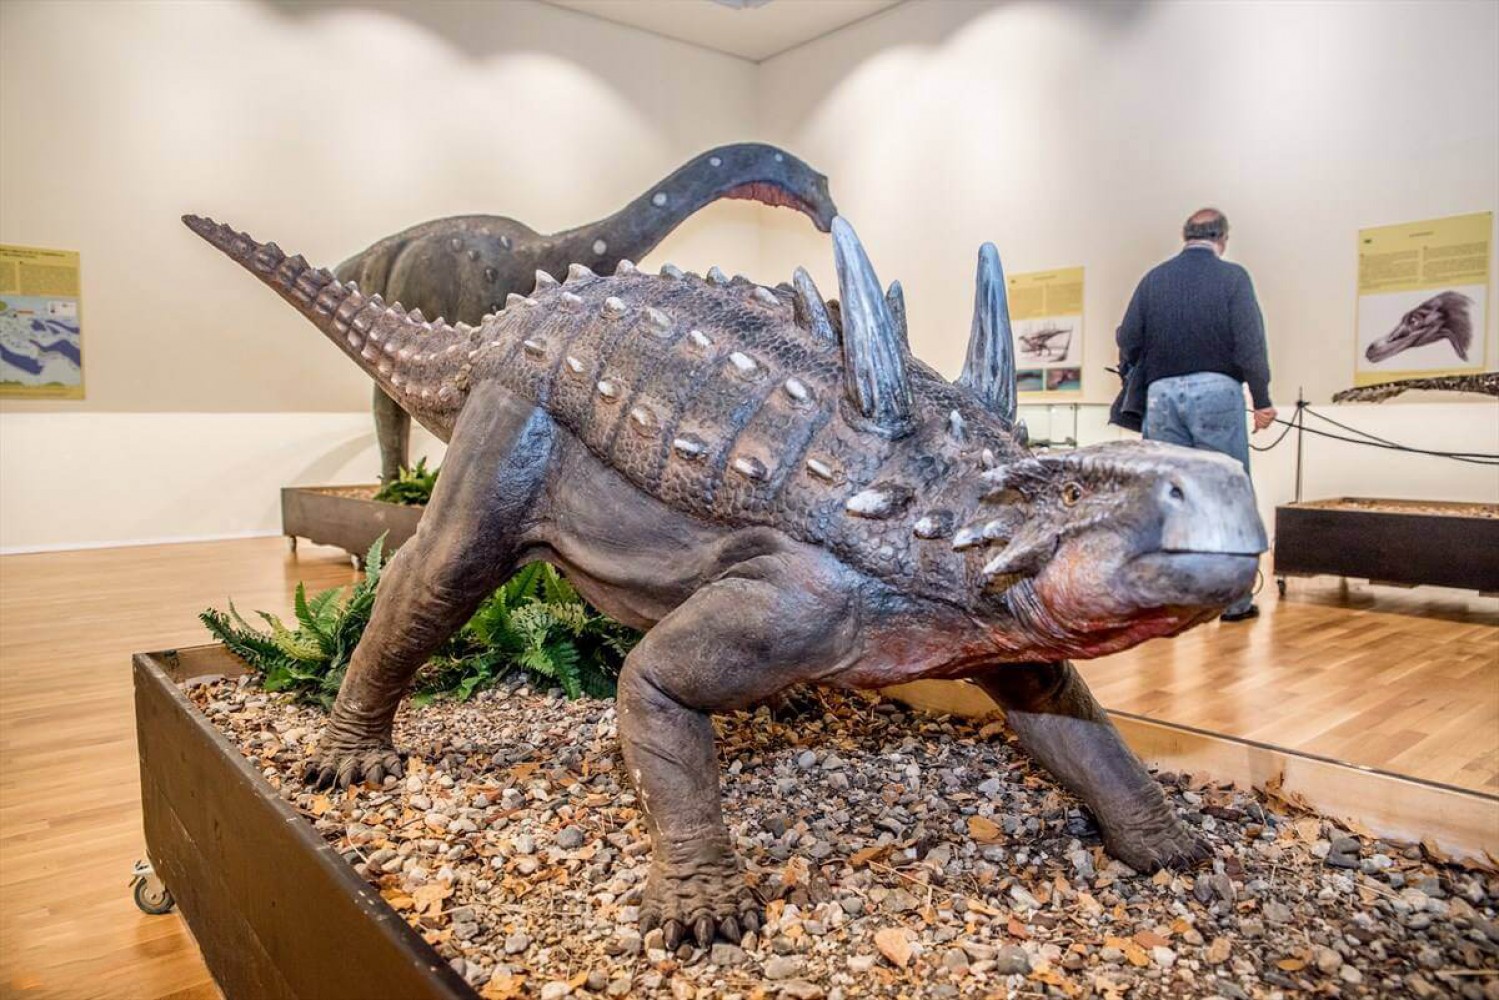 Muzeul Țării Crișurilor - expoziție dinozauri